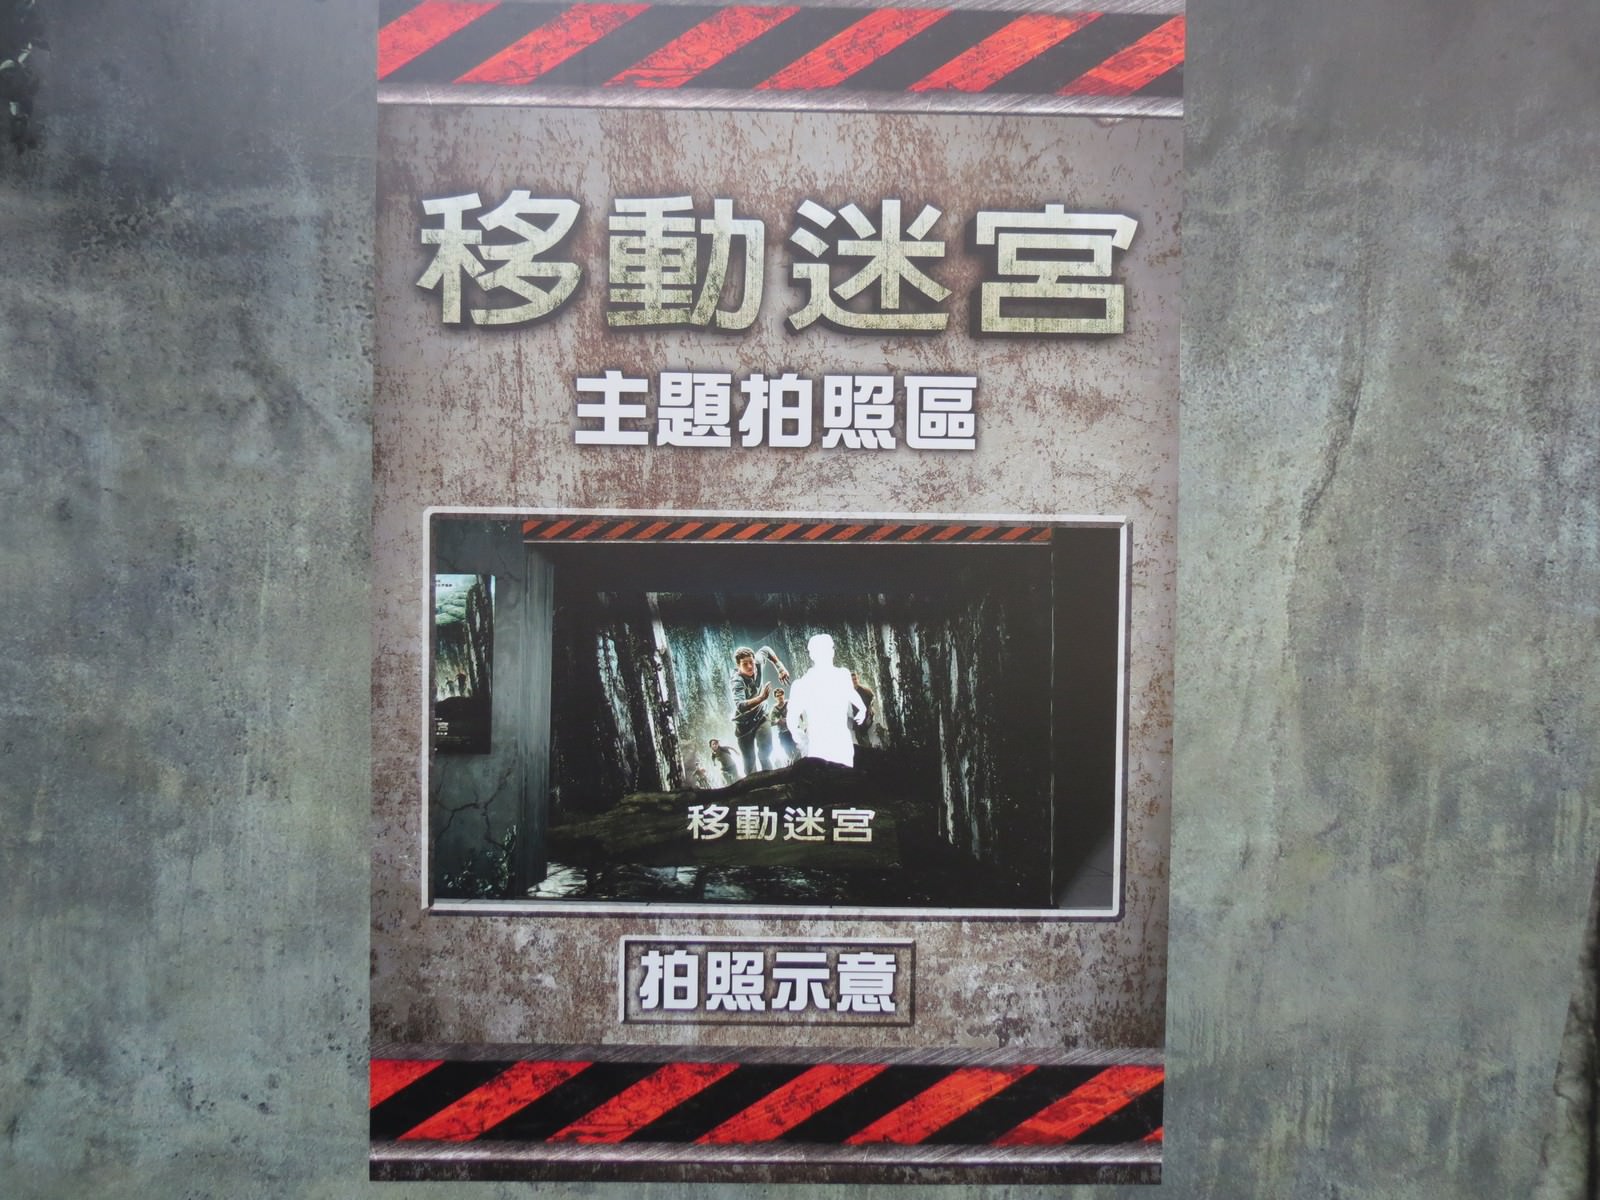 Movie, Maze Runner: The Death Cure(美國, 2018) / 移動迷宮：死亡解藥(台灣.香港) / 移动迷宫3：死亡解药(中國), 廣告看板, 三創數位生活園區